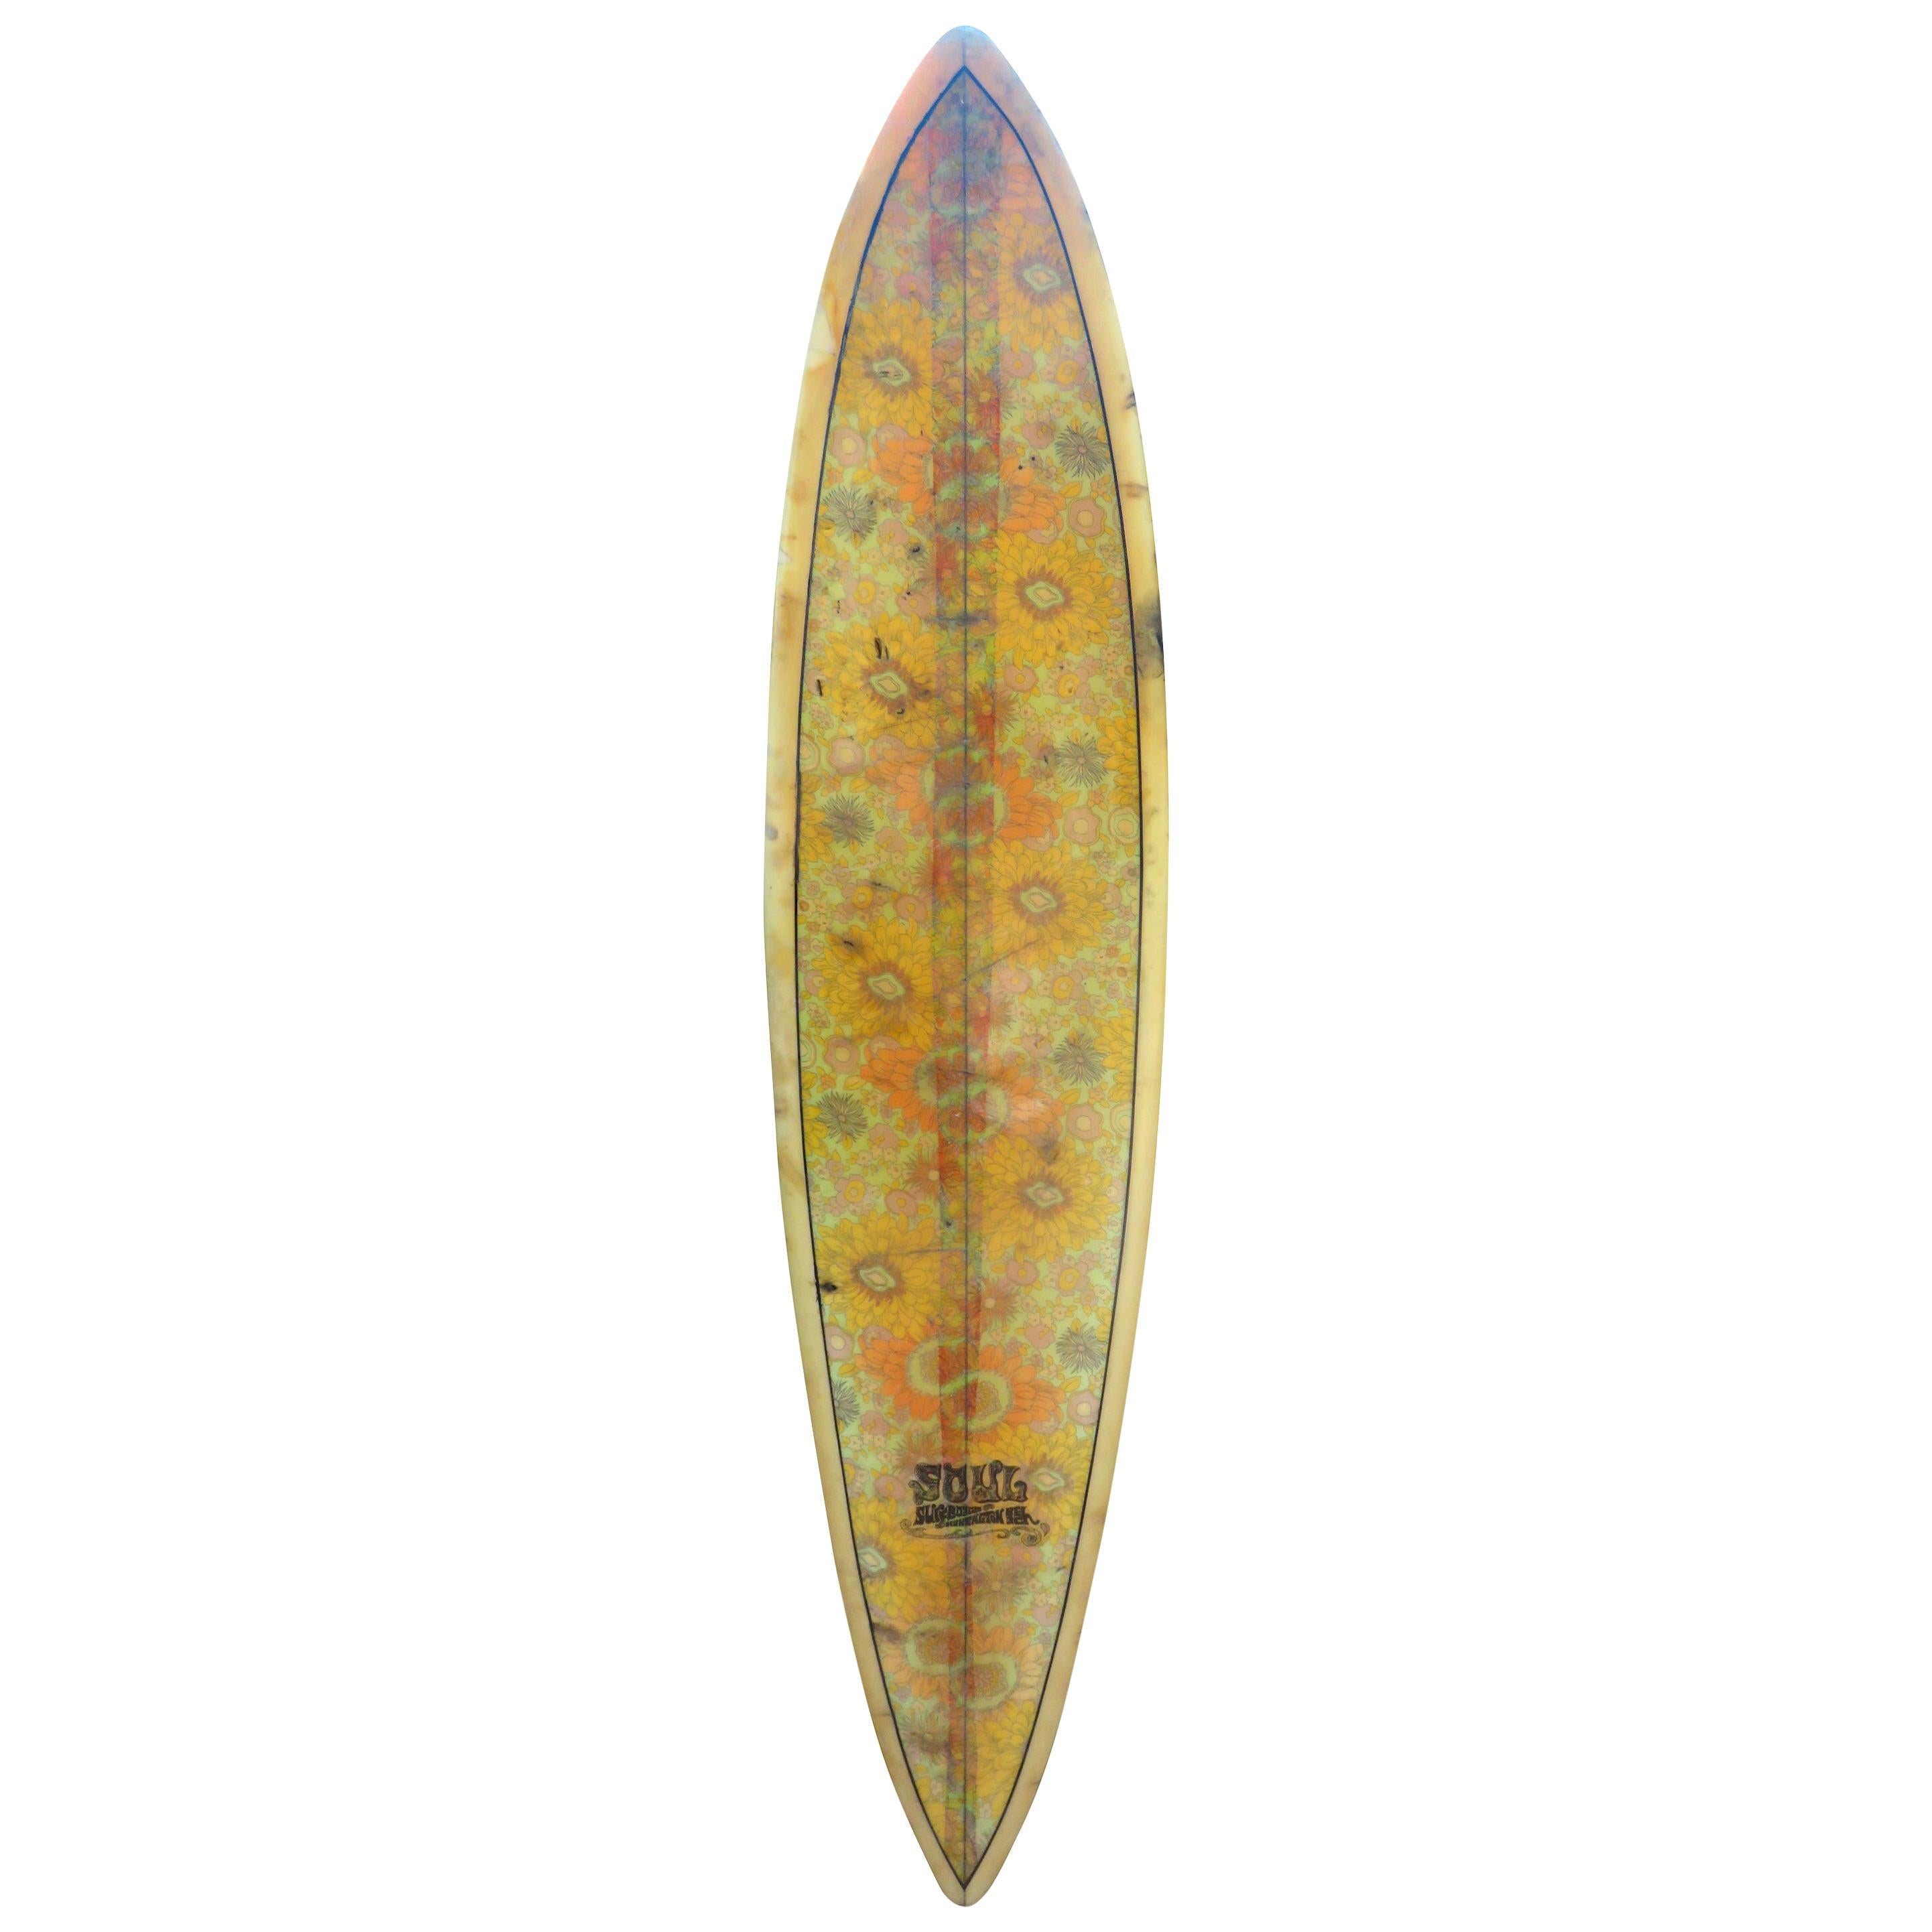 Vintage 1960s Soul Surfboards Single Fin Surfboard